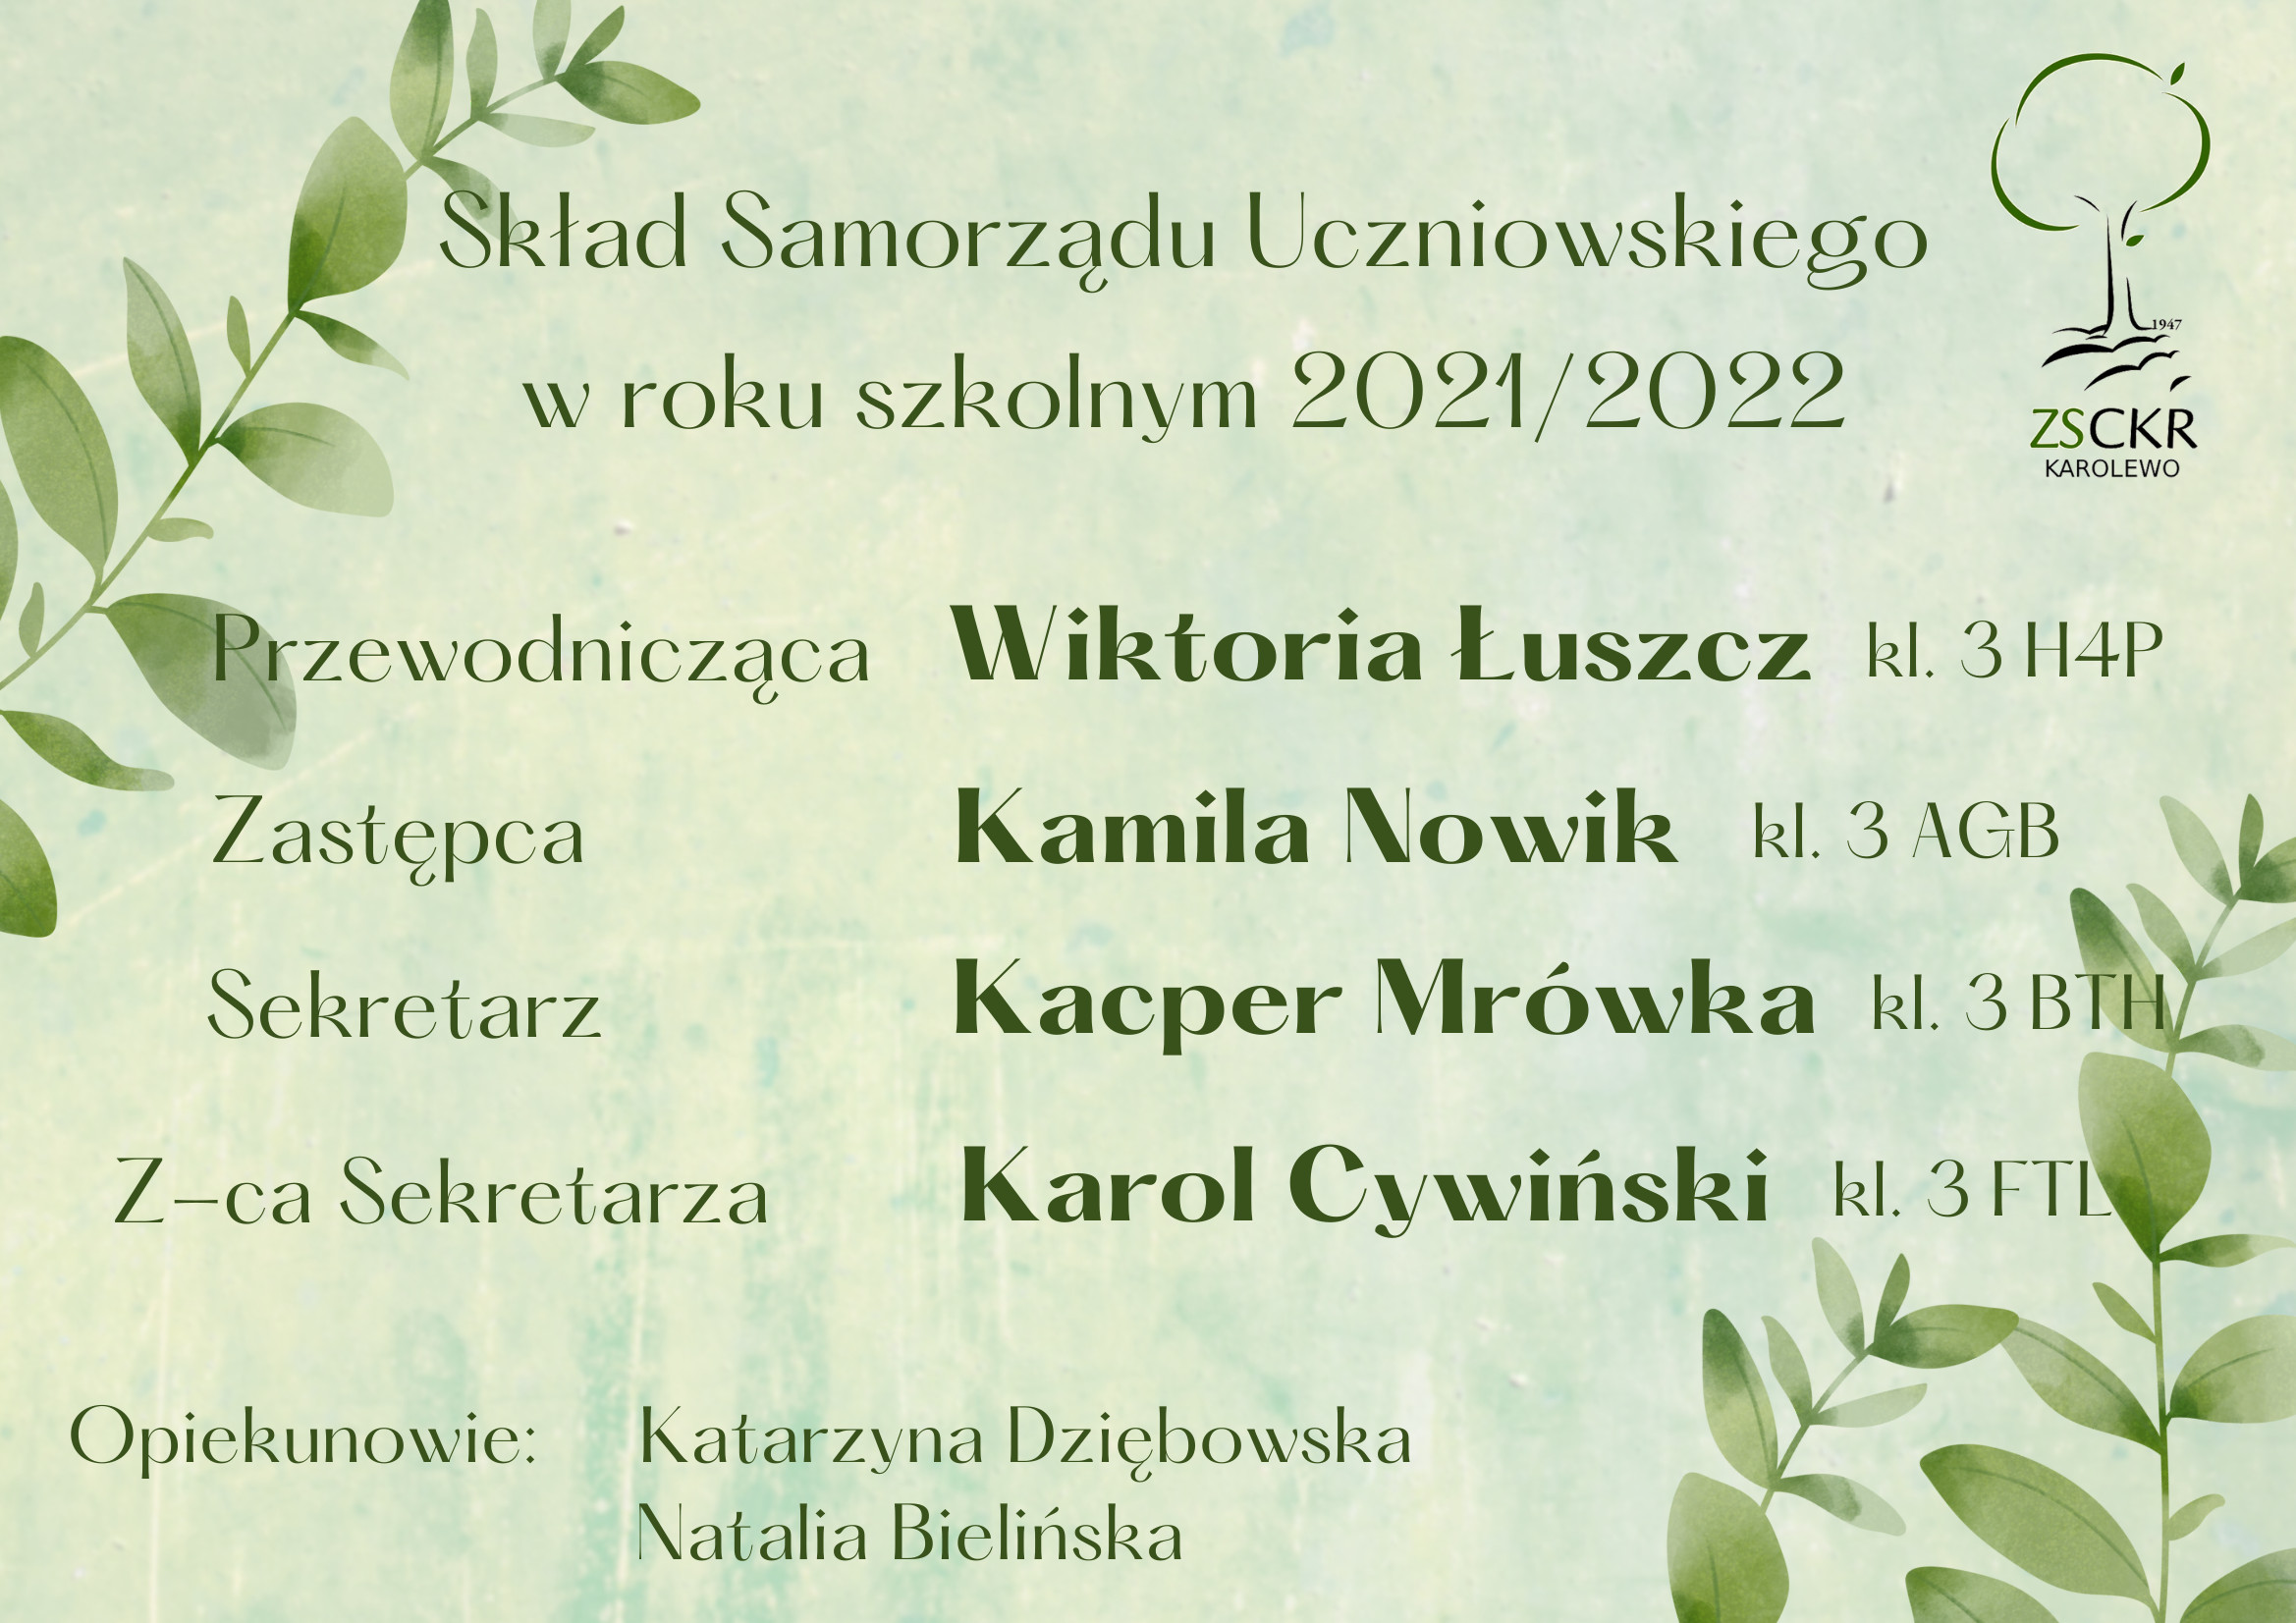 Sklad-Samorzadu-Uczniowskiego-z-Natalia.jpg